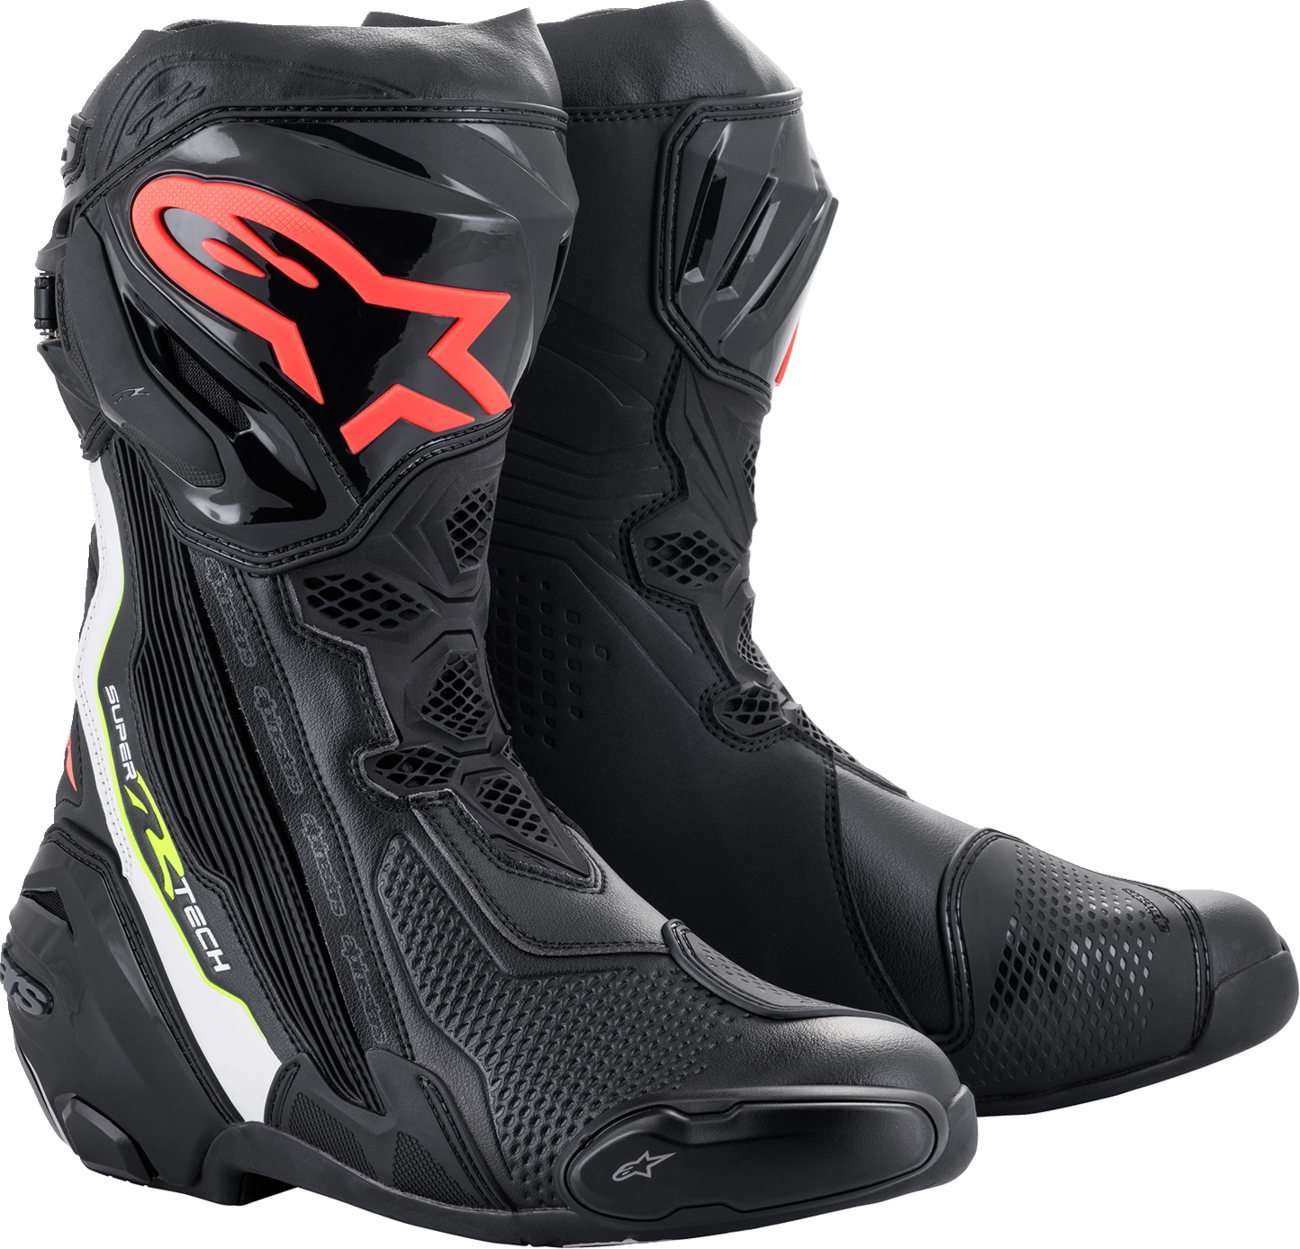 ALPINESTARS Supertech R Boots - Black/Red - US 9 / EU 43 2220021-1236-43